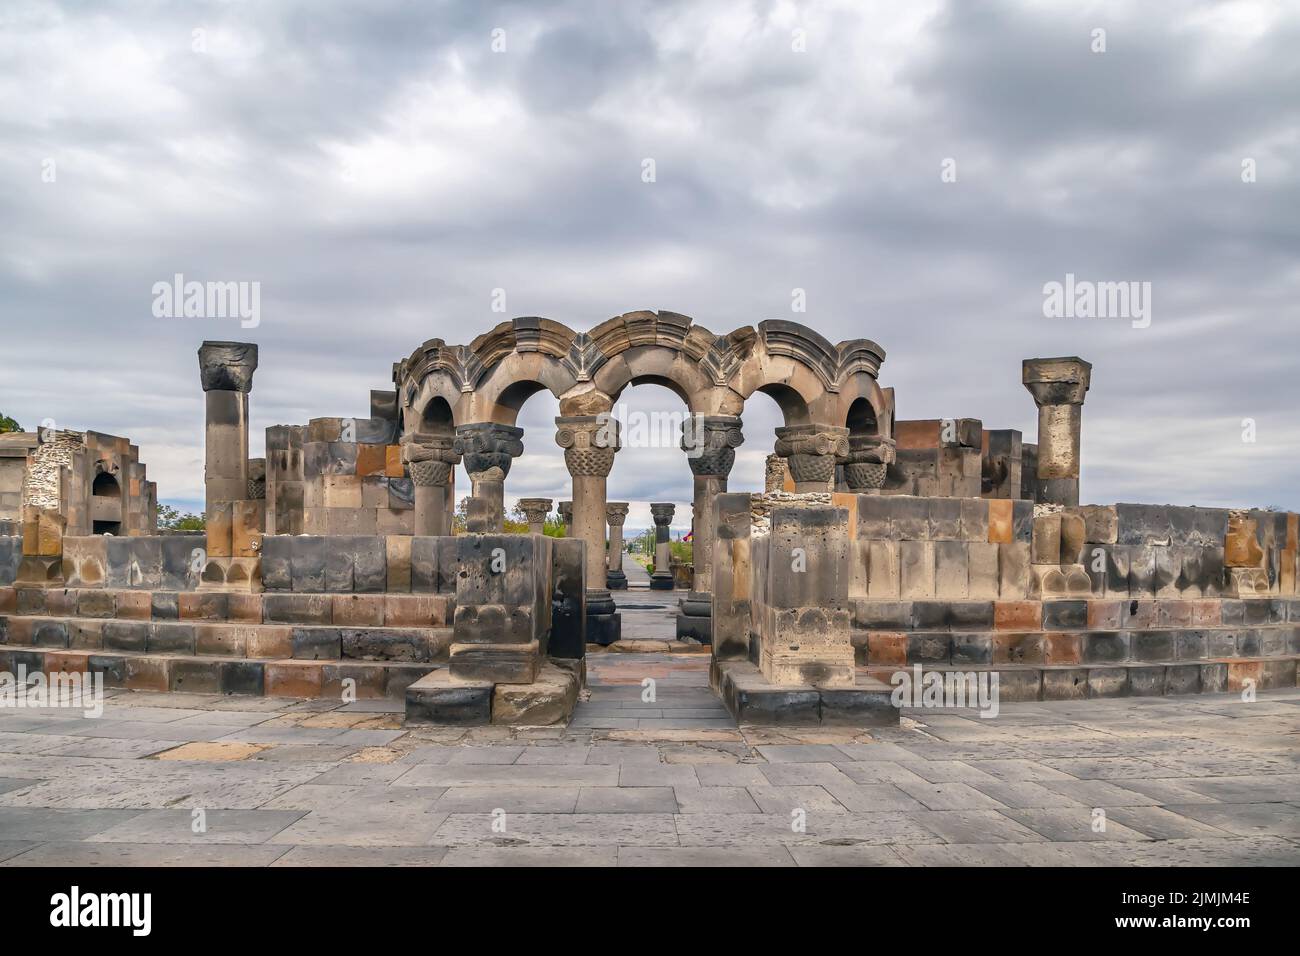 Zvartnots Cathedral, Armenia Stock Photo